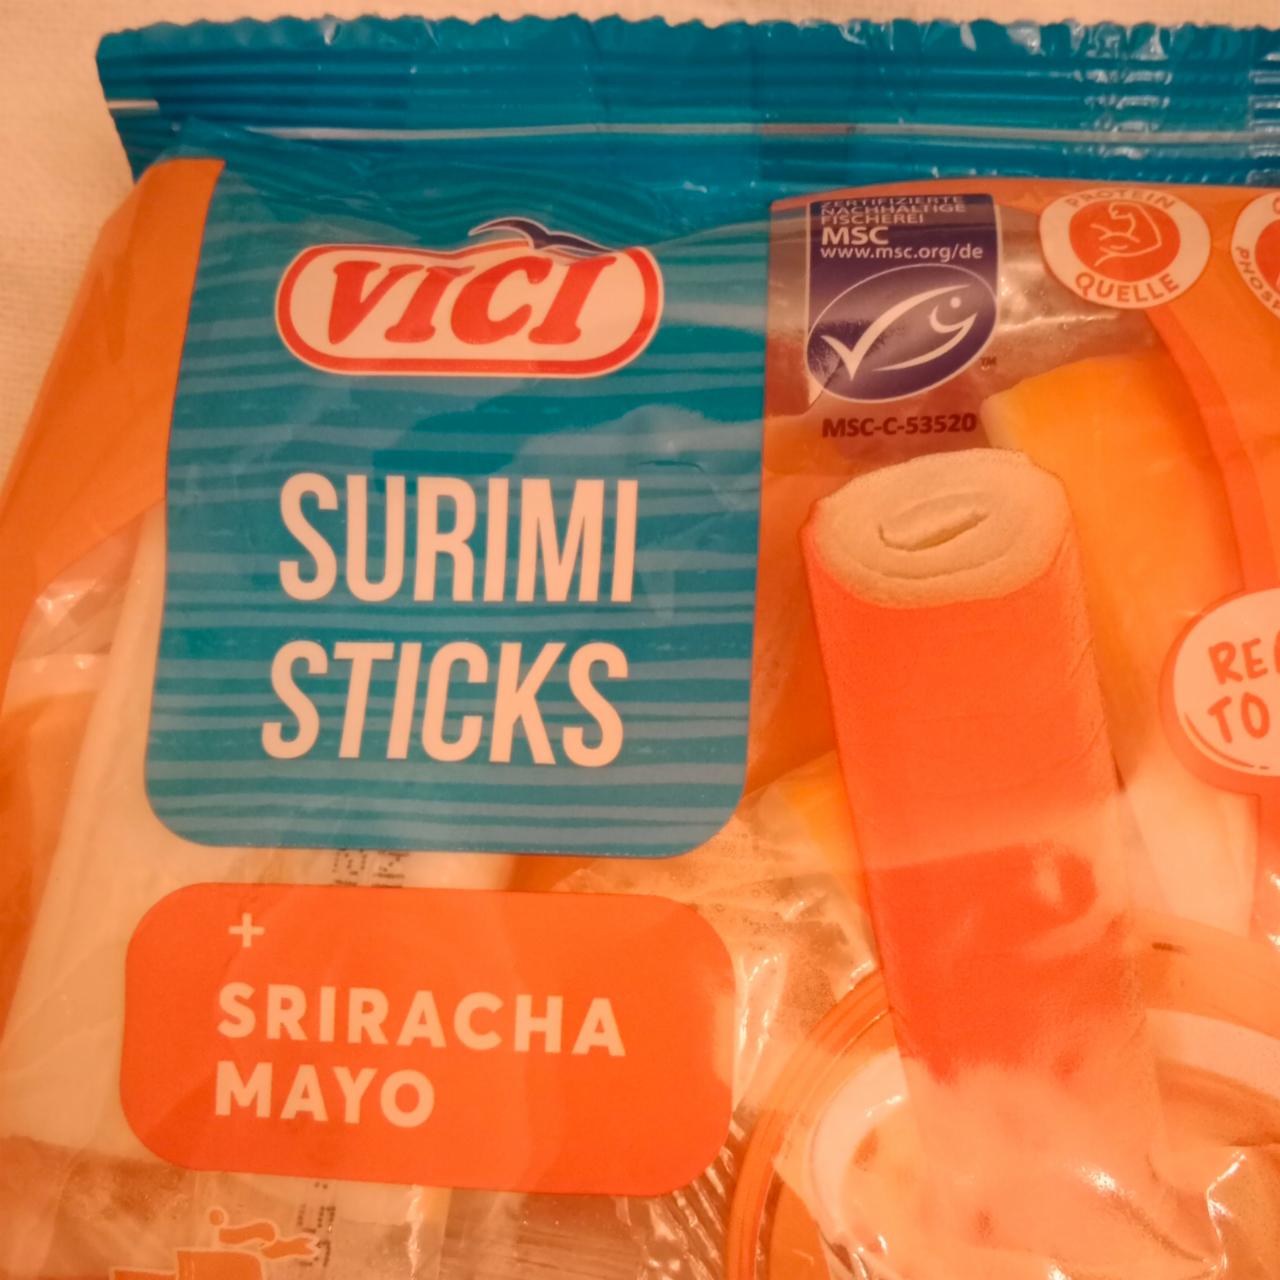 Fotografie - Surimi Sticks + Sriracha Mayo Vici